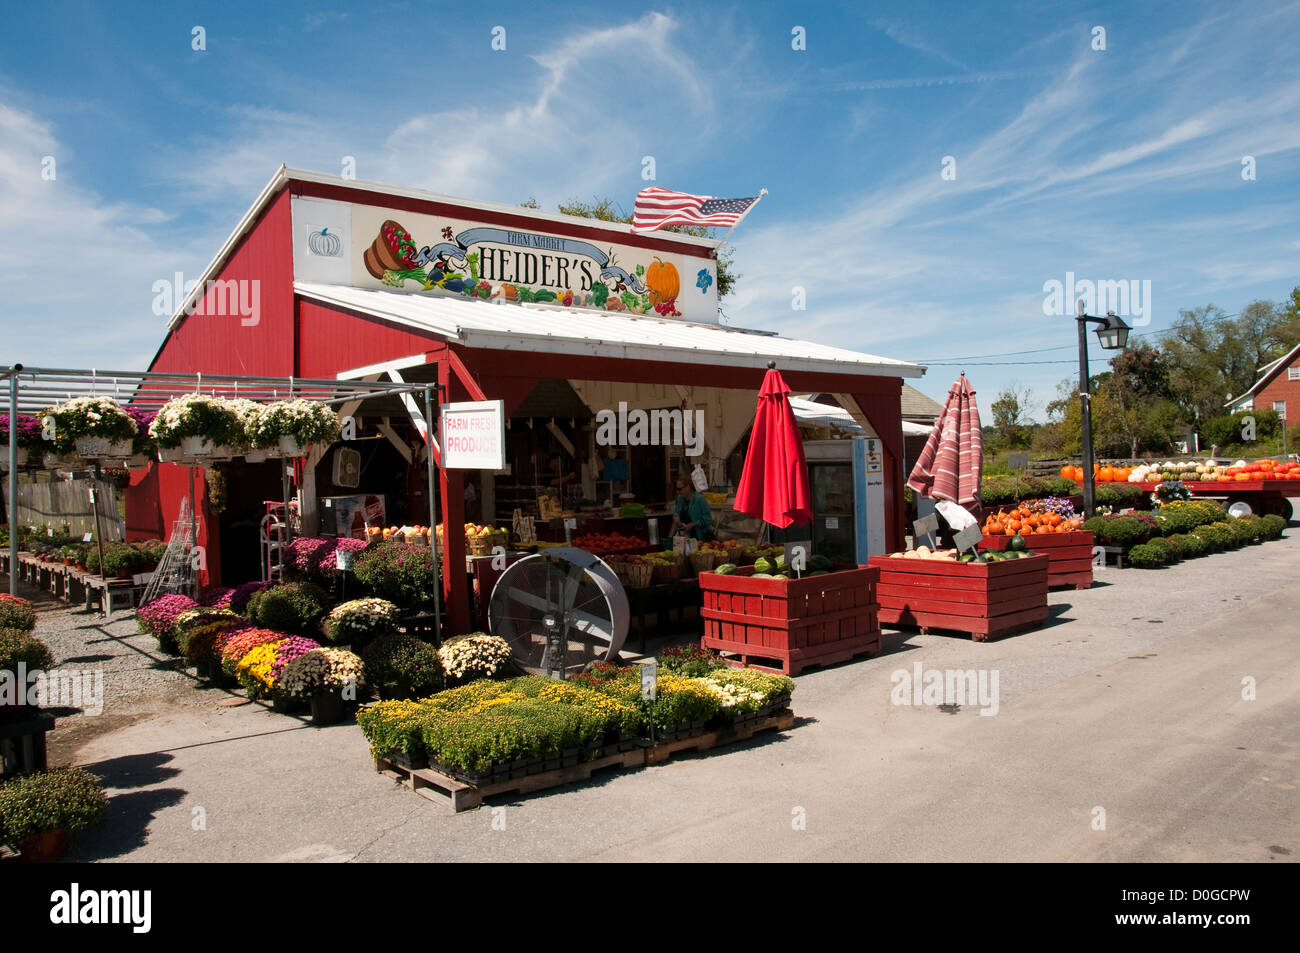 Stati Uniti d'America, a Leesburg in Virginia rurale, Heider di vegetali e frutta stand, la vendita e la produzione di prodotti alimentari speciali diretti. Foto Stock